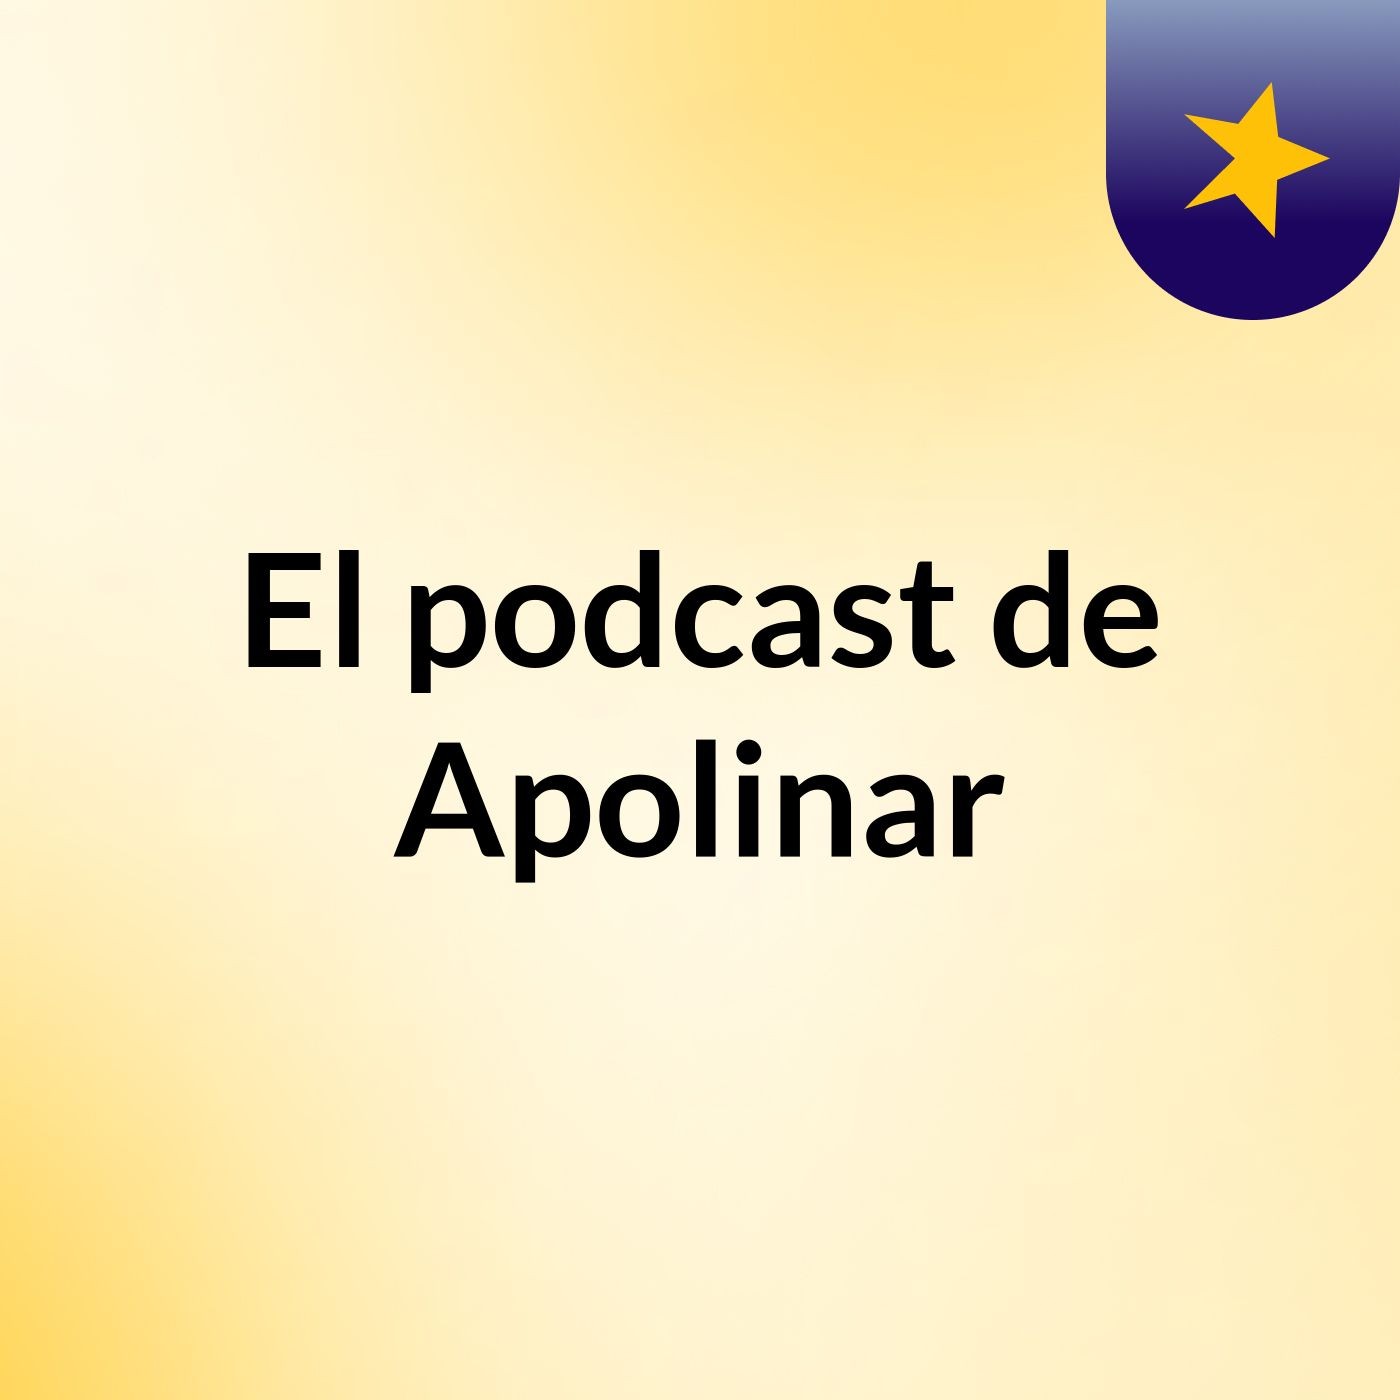 Episodio 16 - El podcast de Apolinar